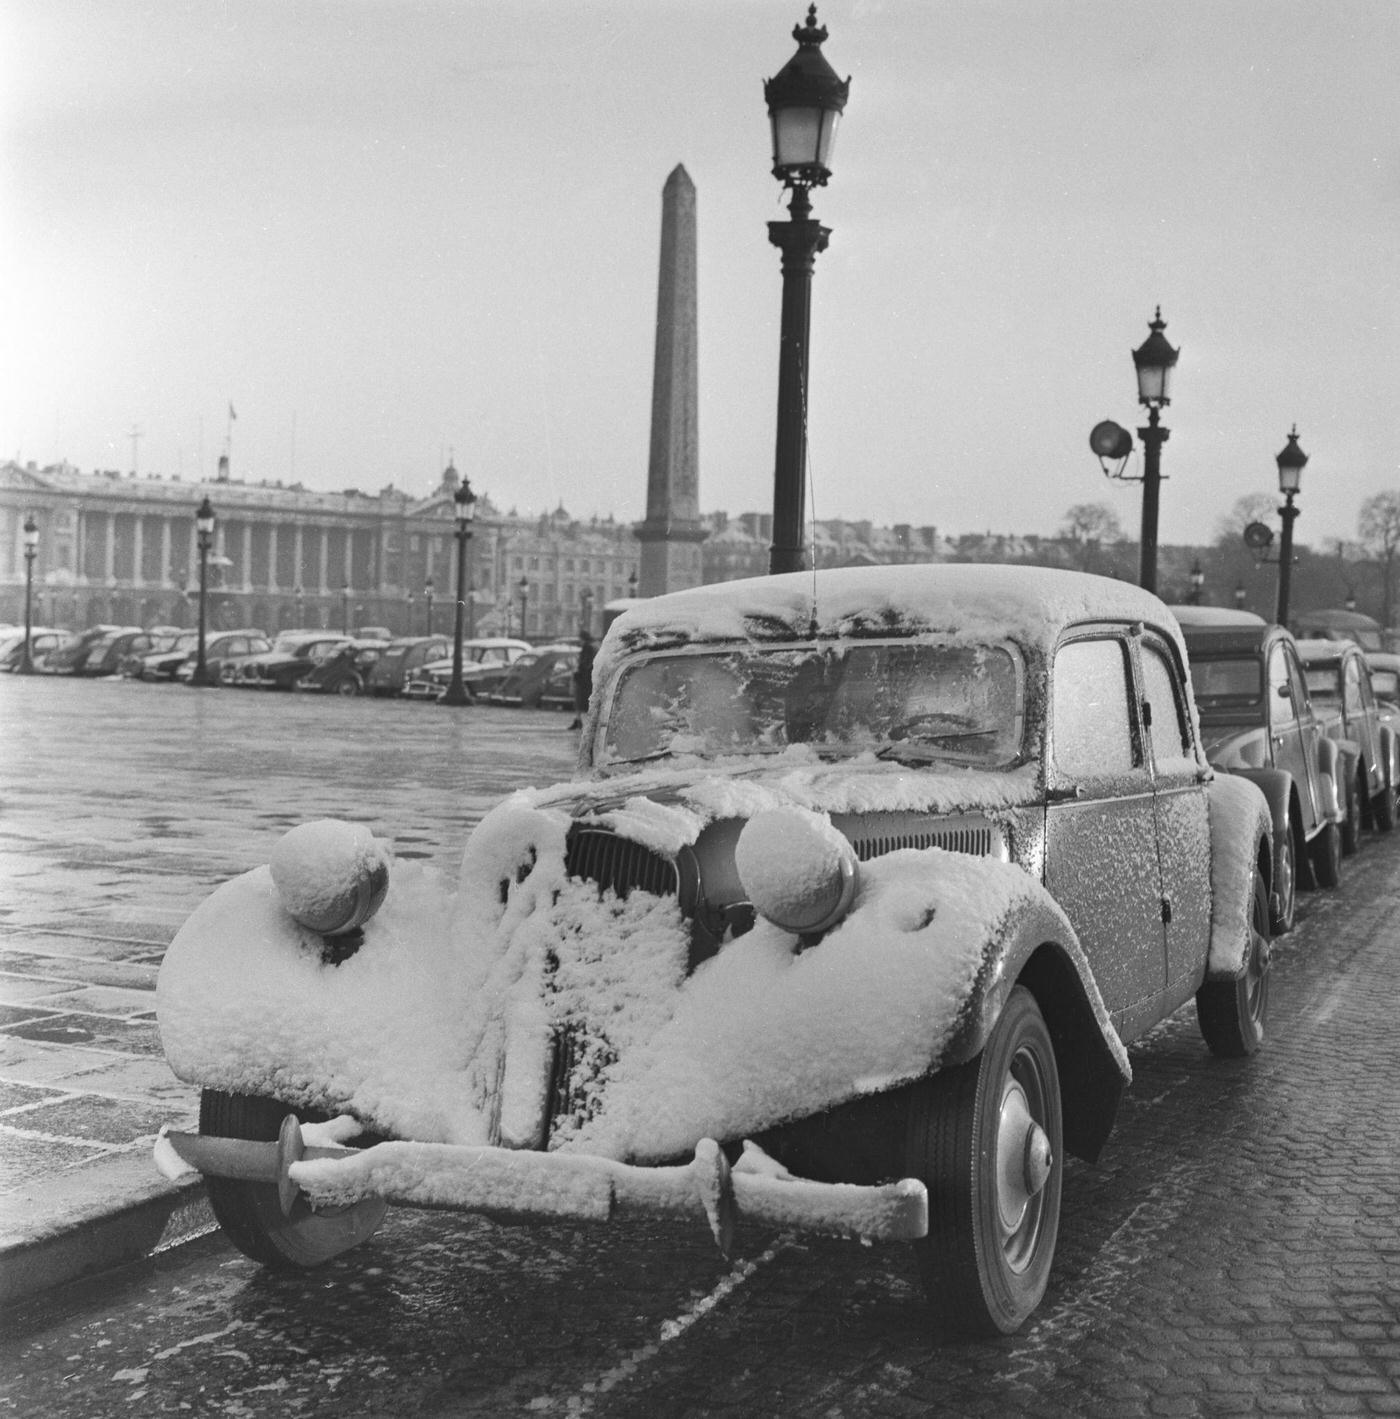 Snowy Day at Place de la Concorde, Paris, January 1958.